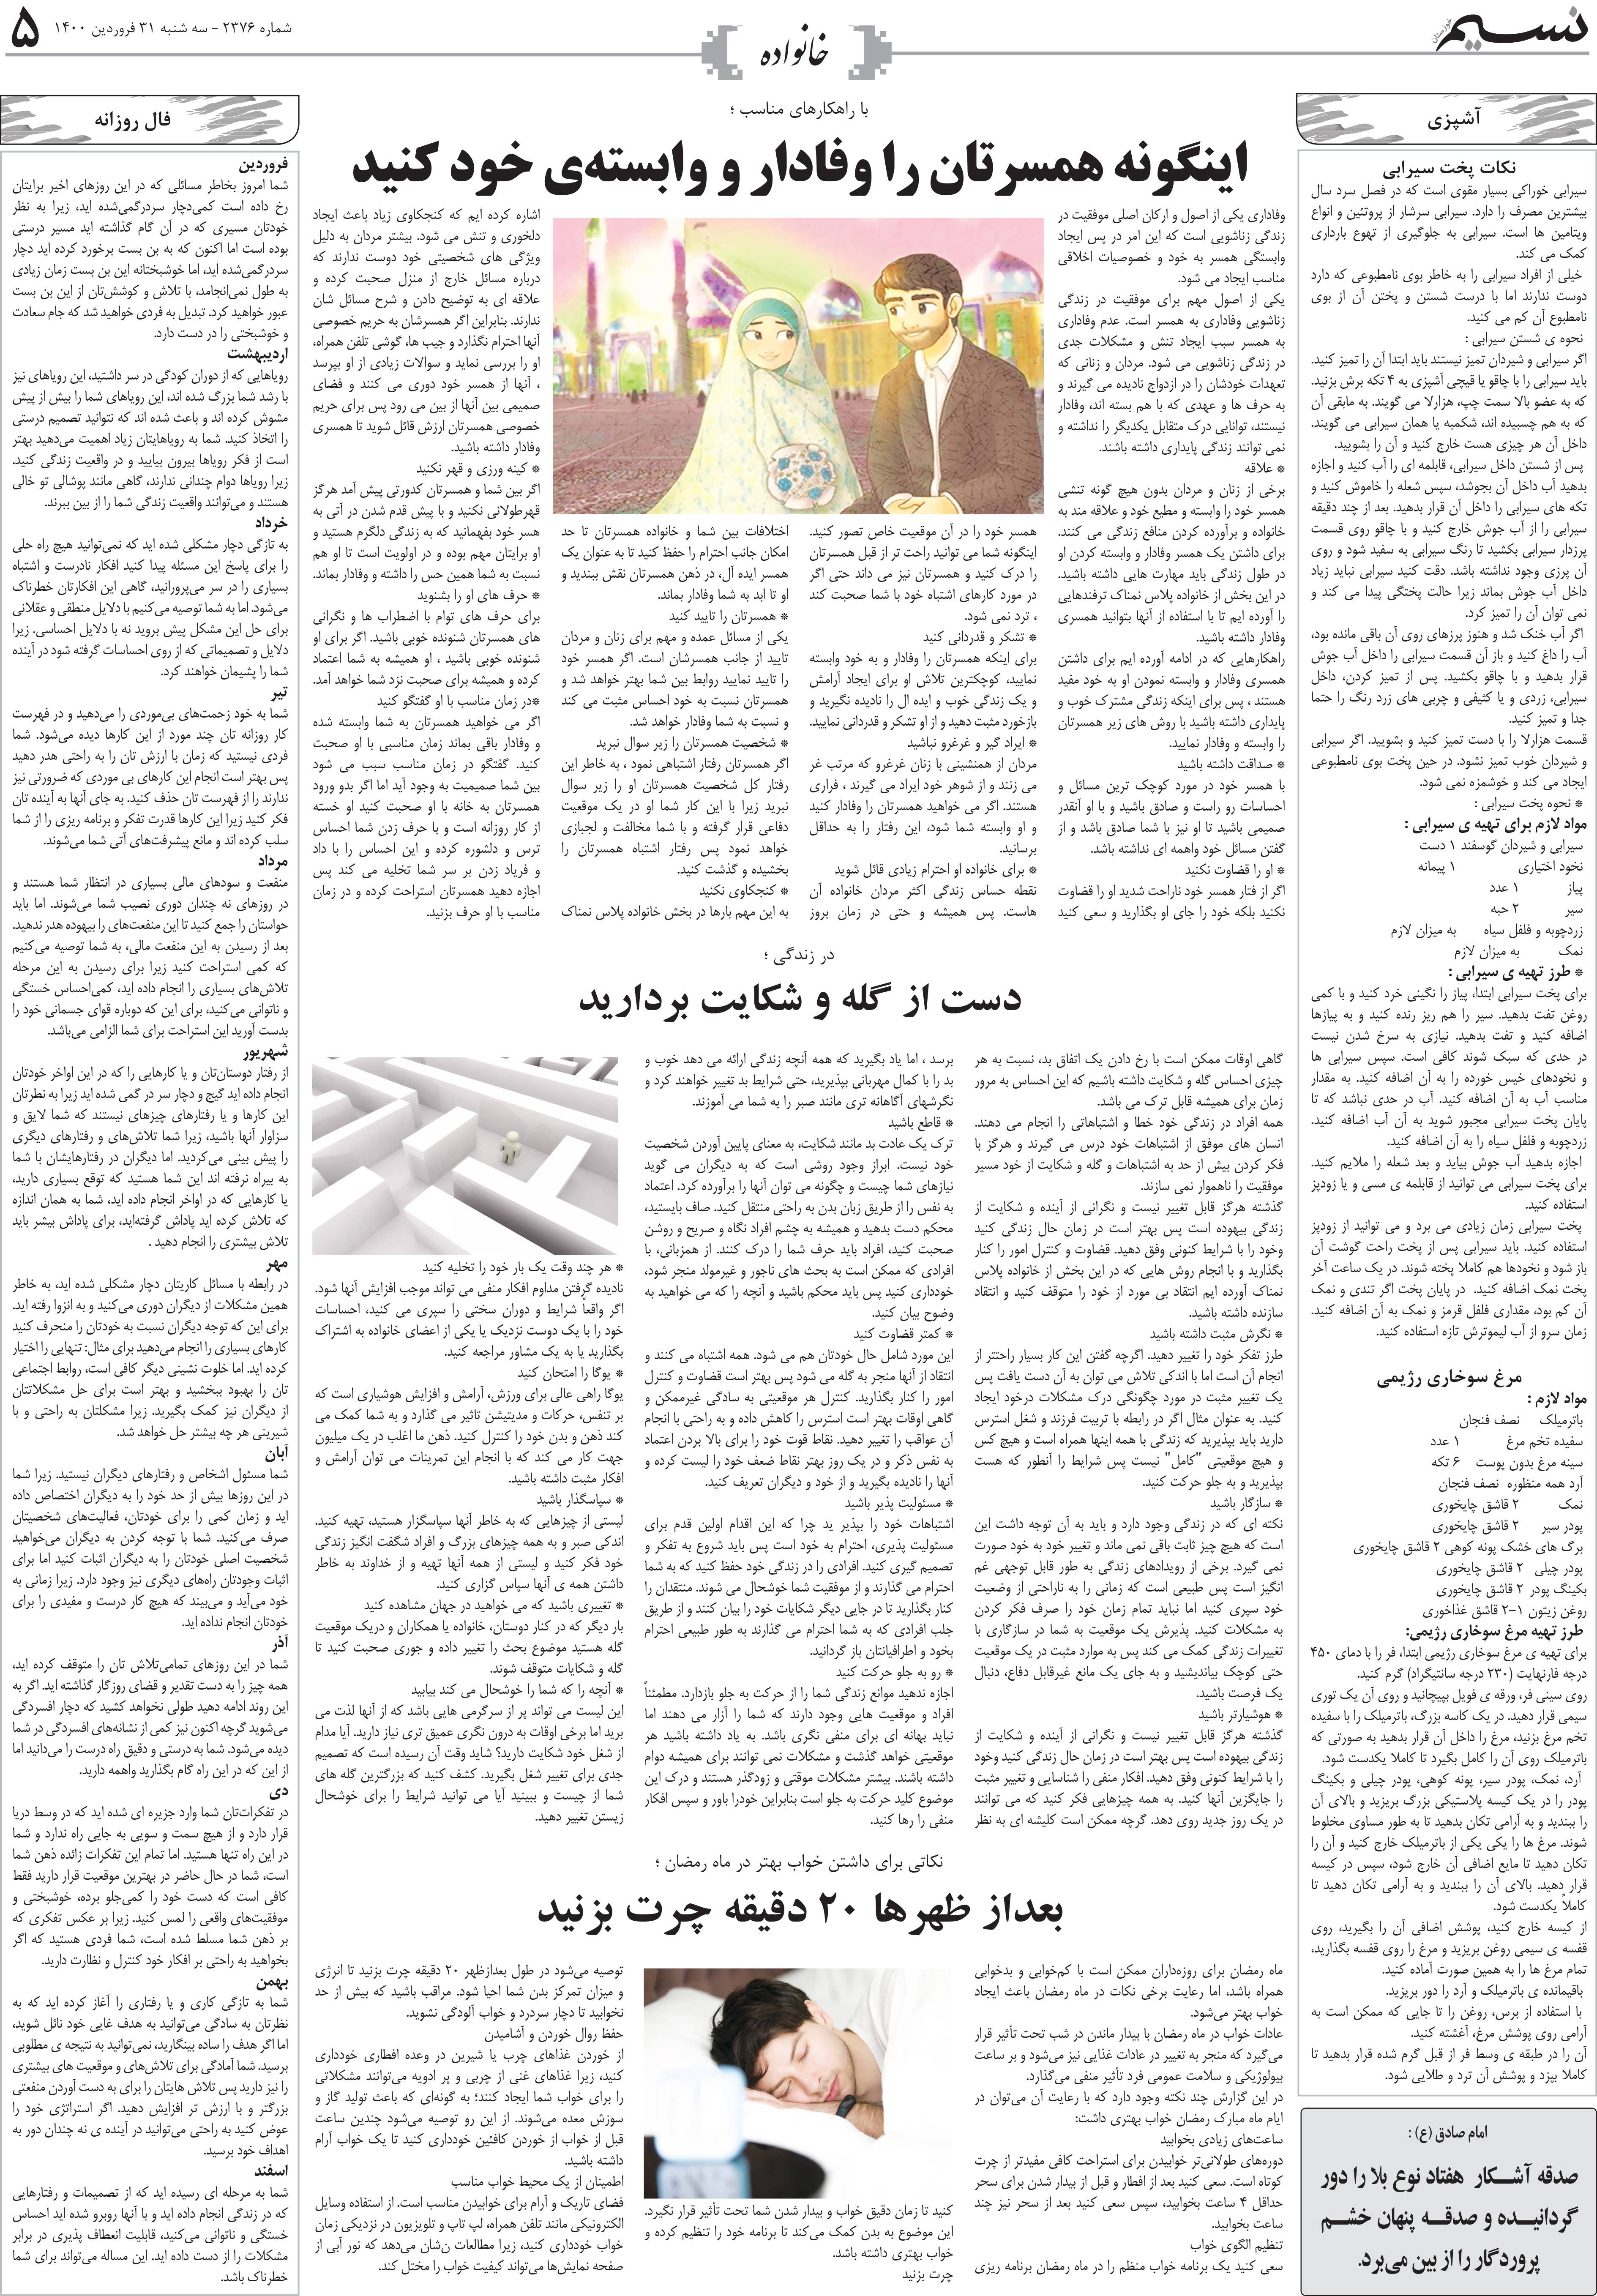 صفحه خانواده روزنامه نسیم شماره 2376